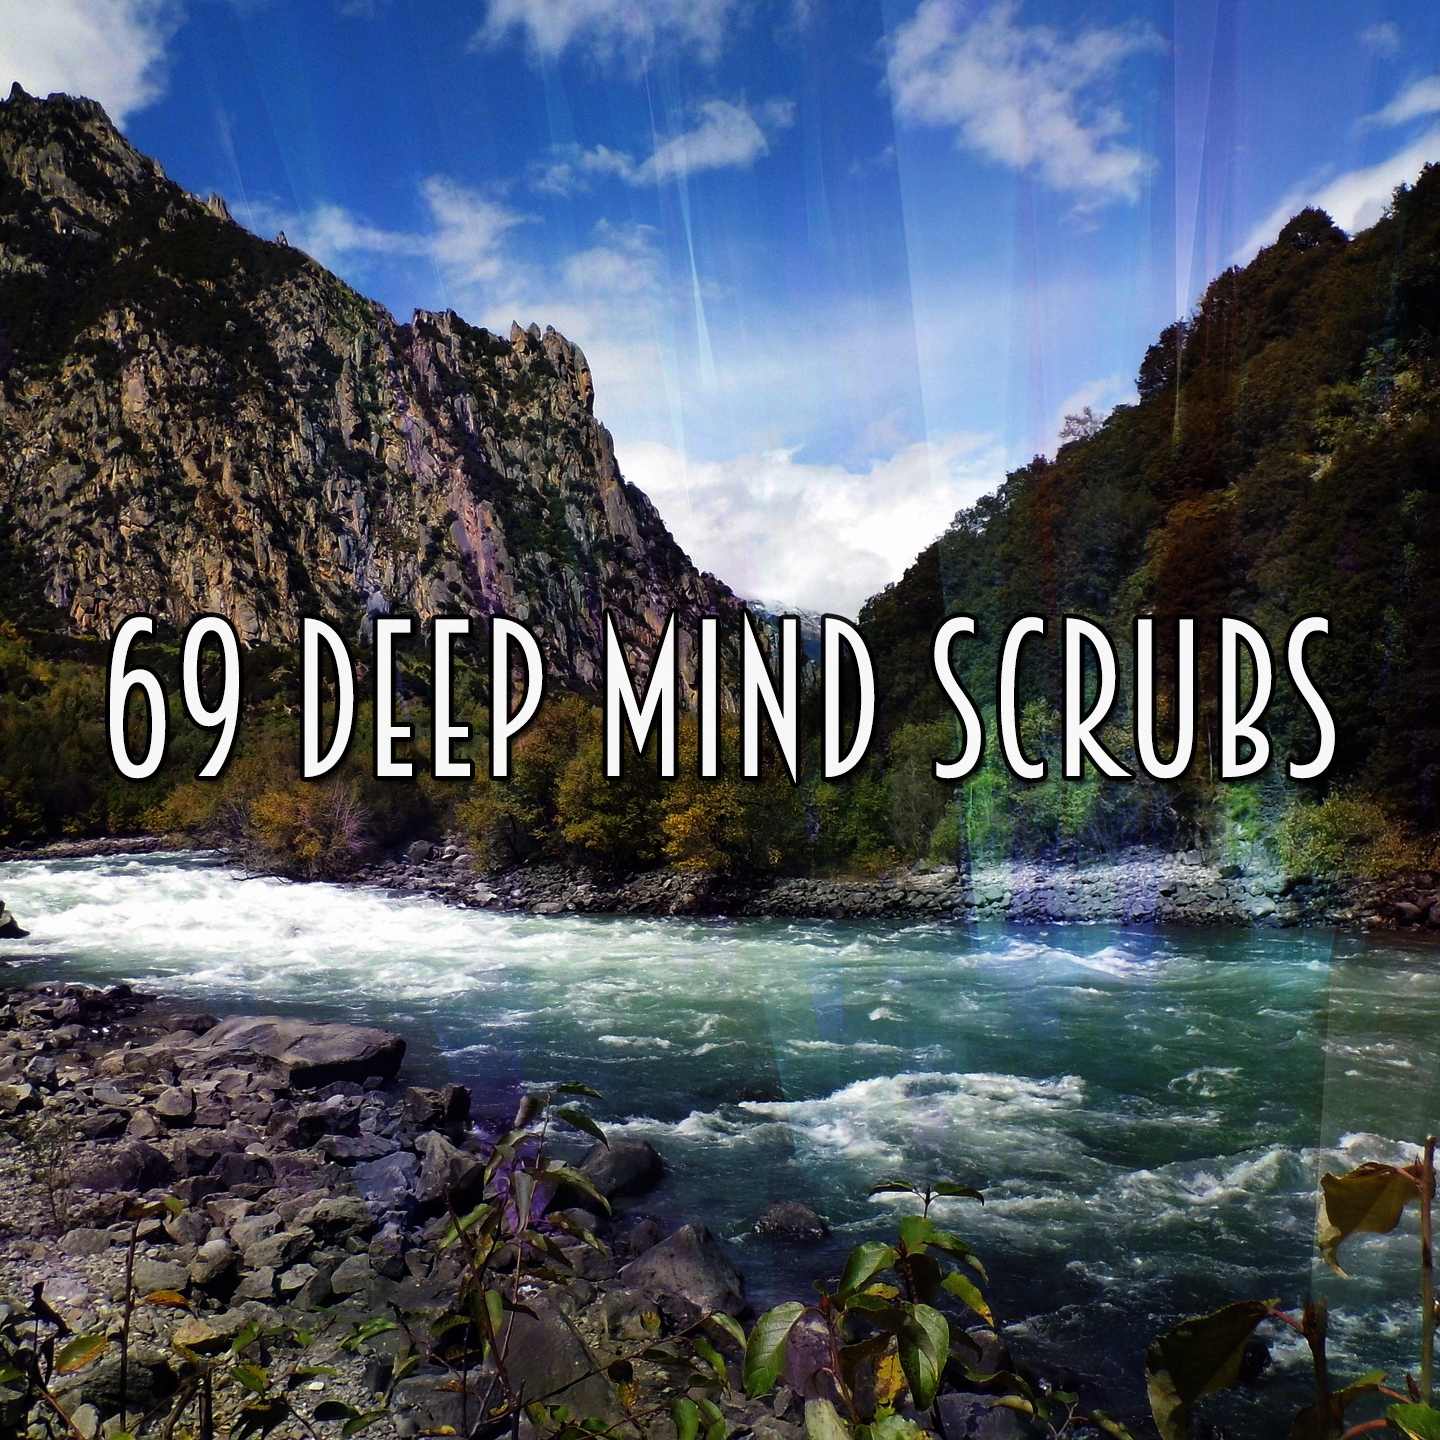 69 Deep Mind Scrubs